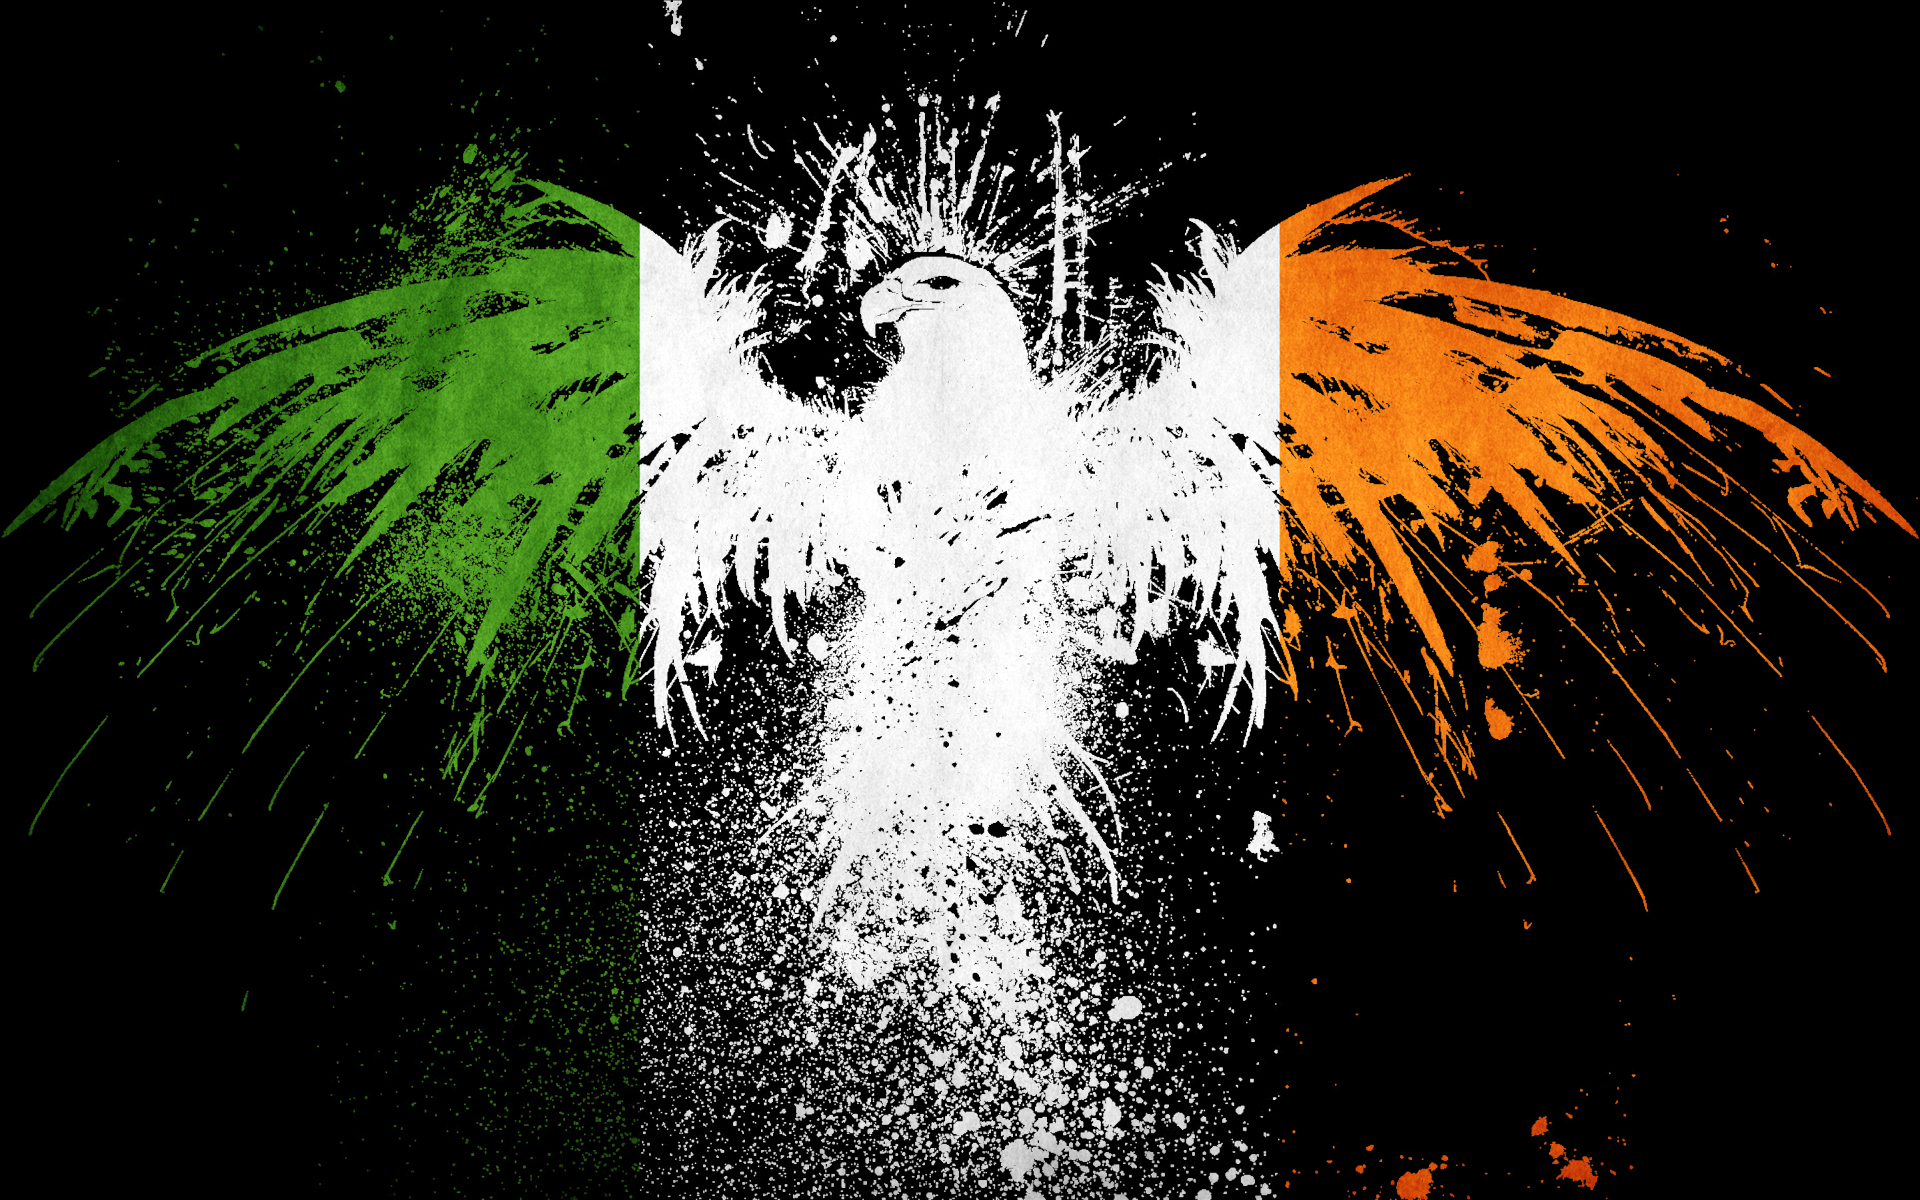 Популярные заставки и фоны Флаг Ирландии на компьютер